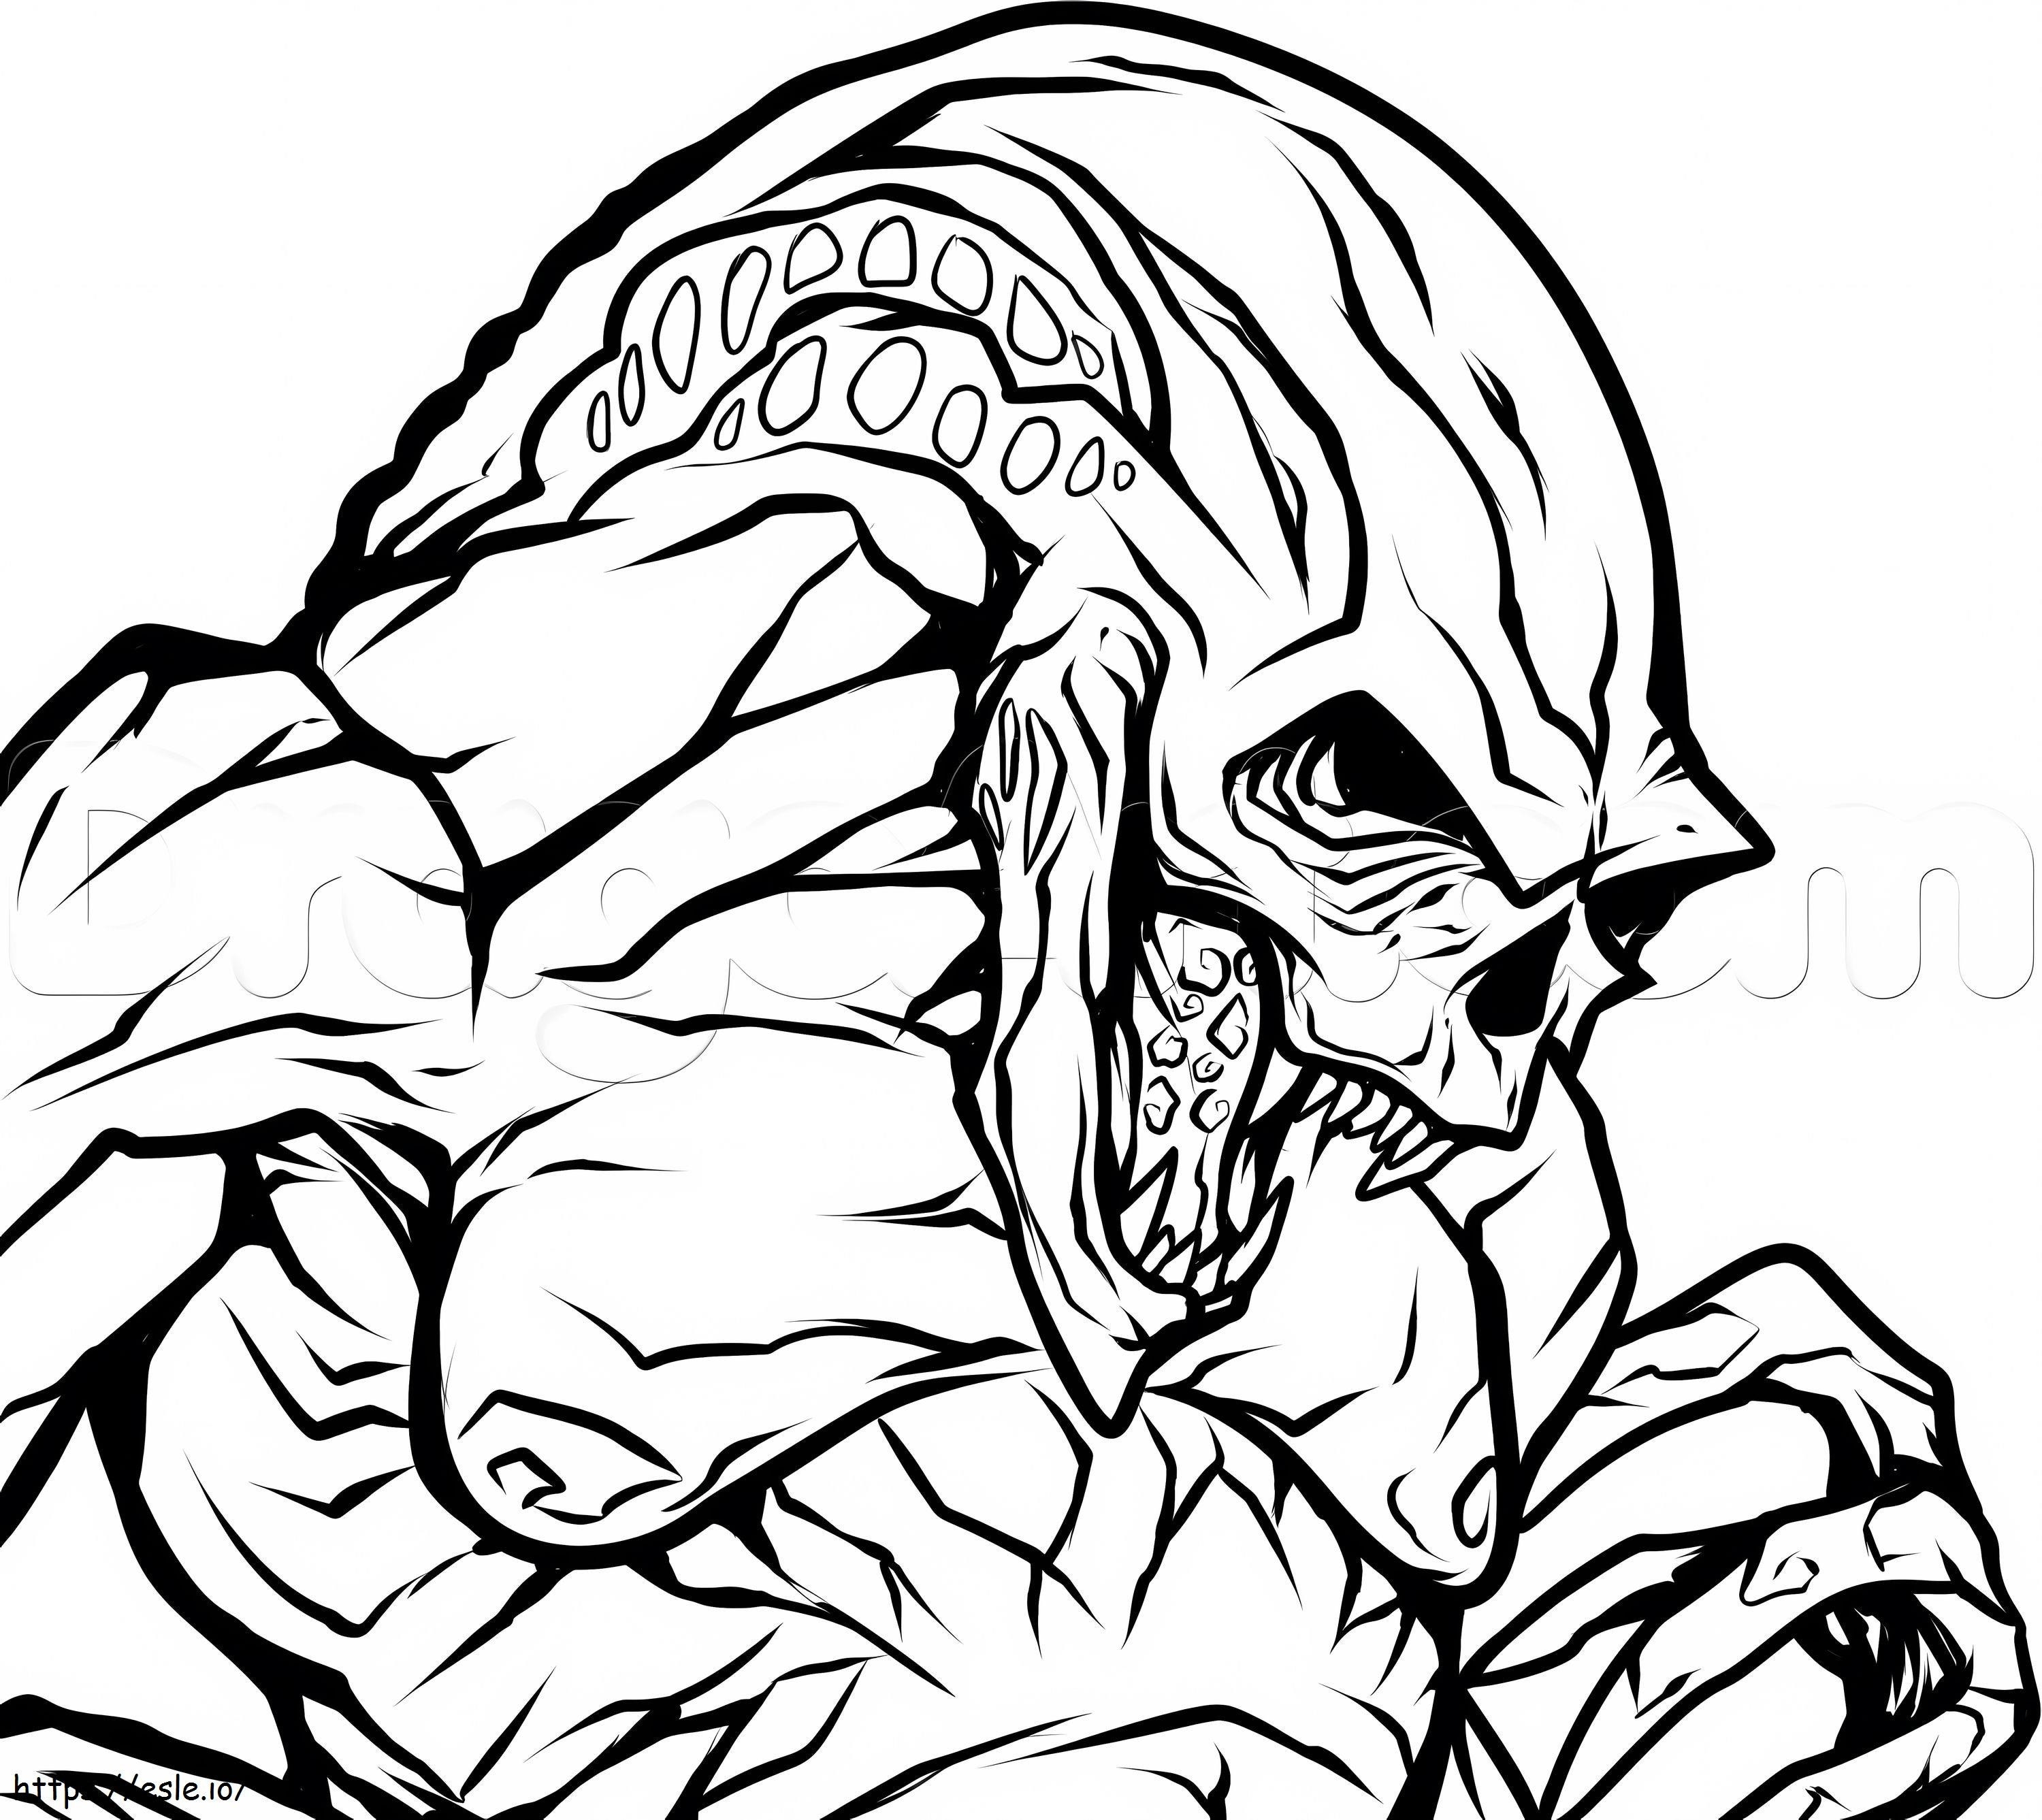 Creepy Alien coloring page